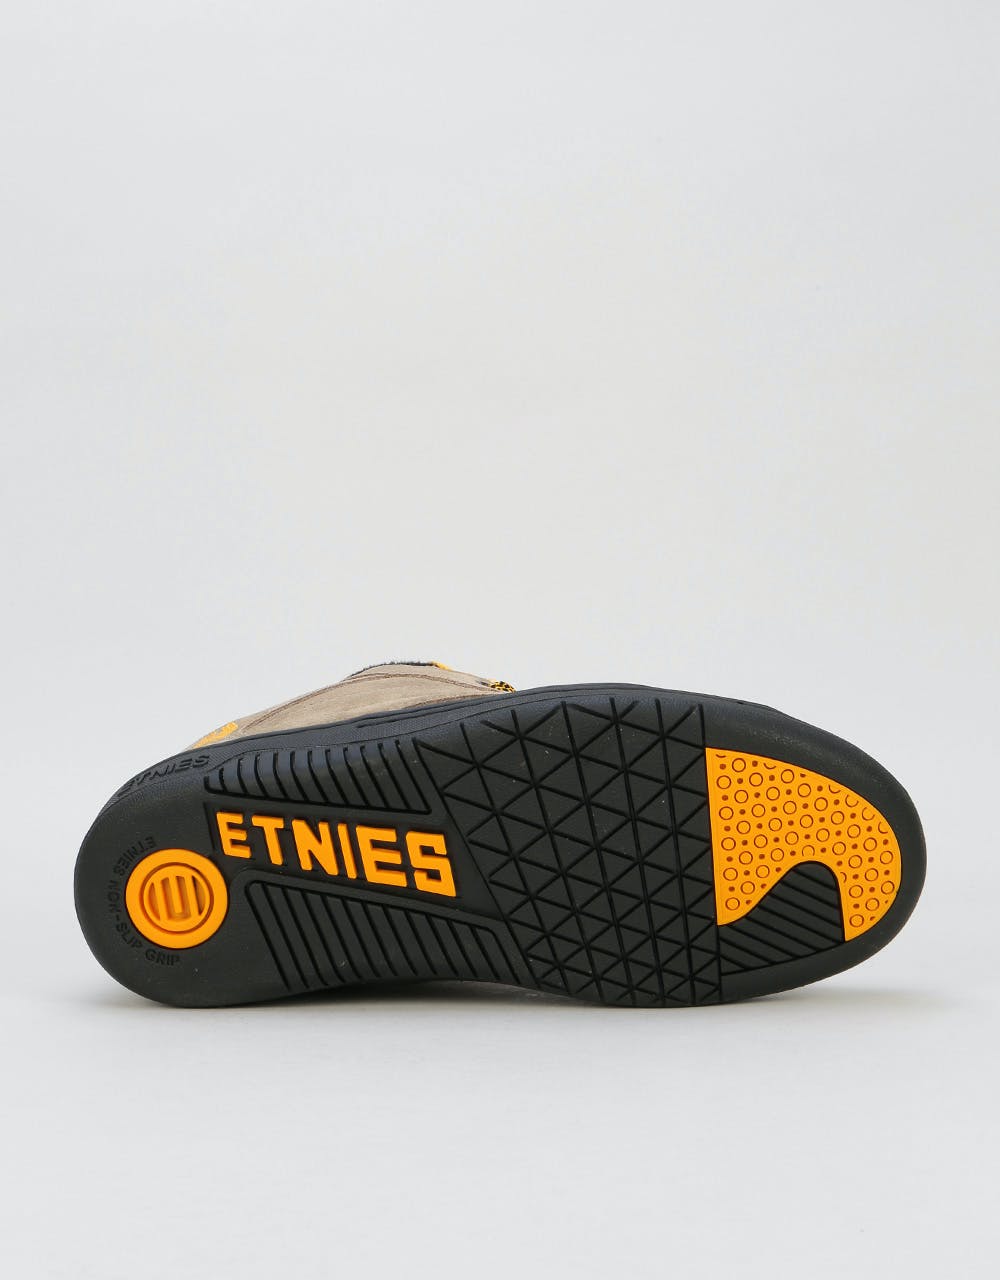 Etnies Czar Skate Shoes - Olive/Black